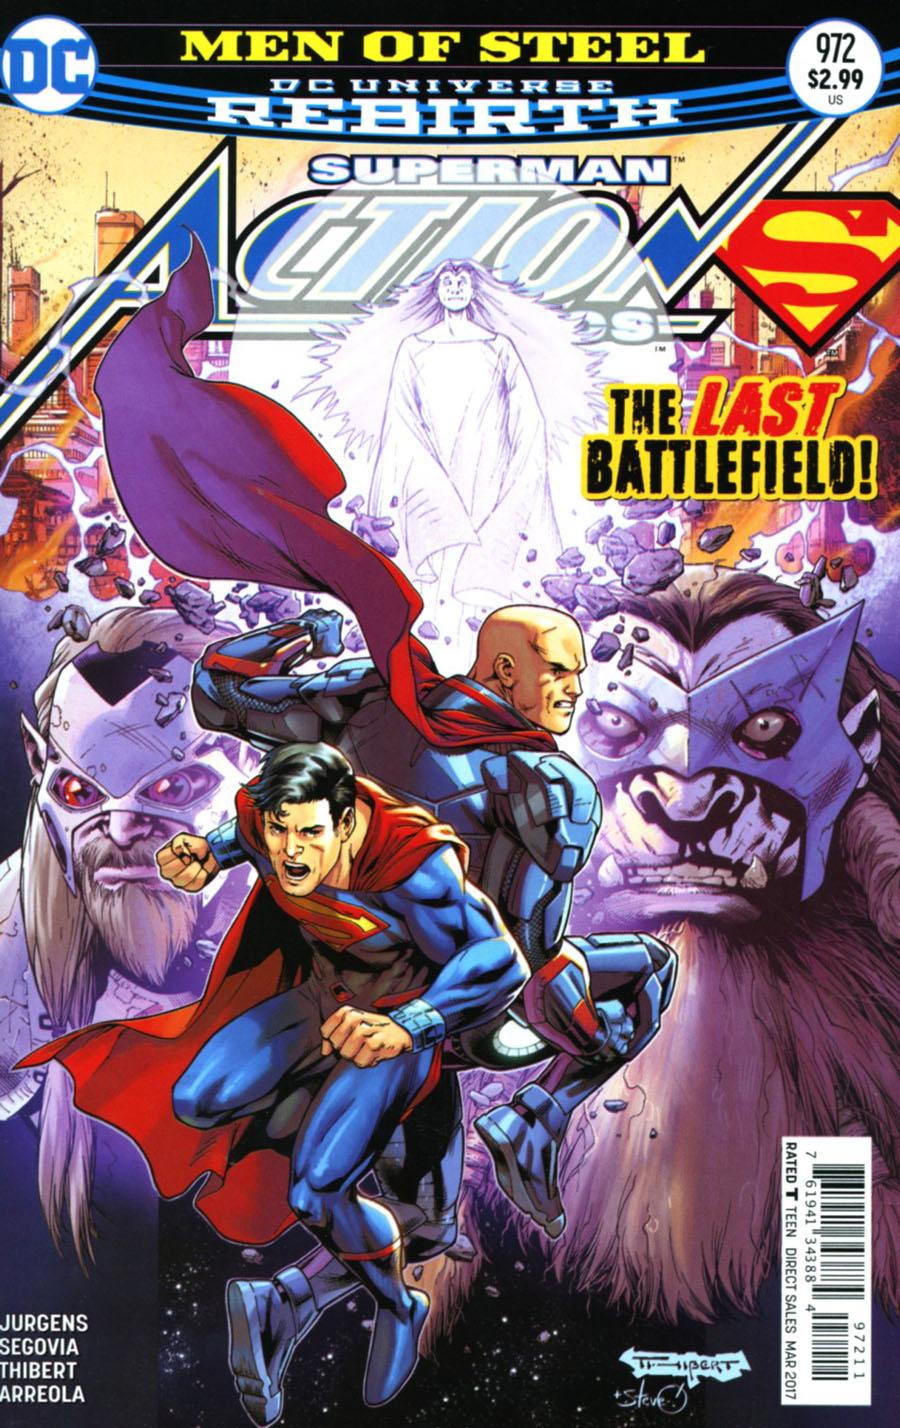 Action Comics Vol. 2 #972